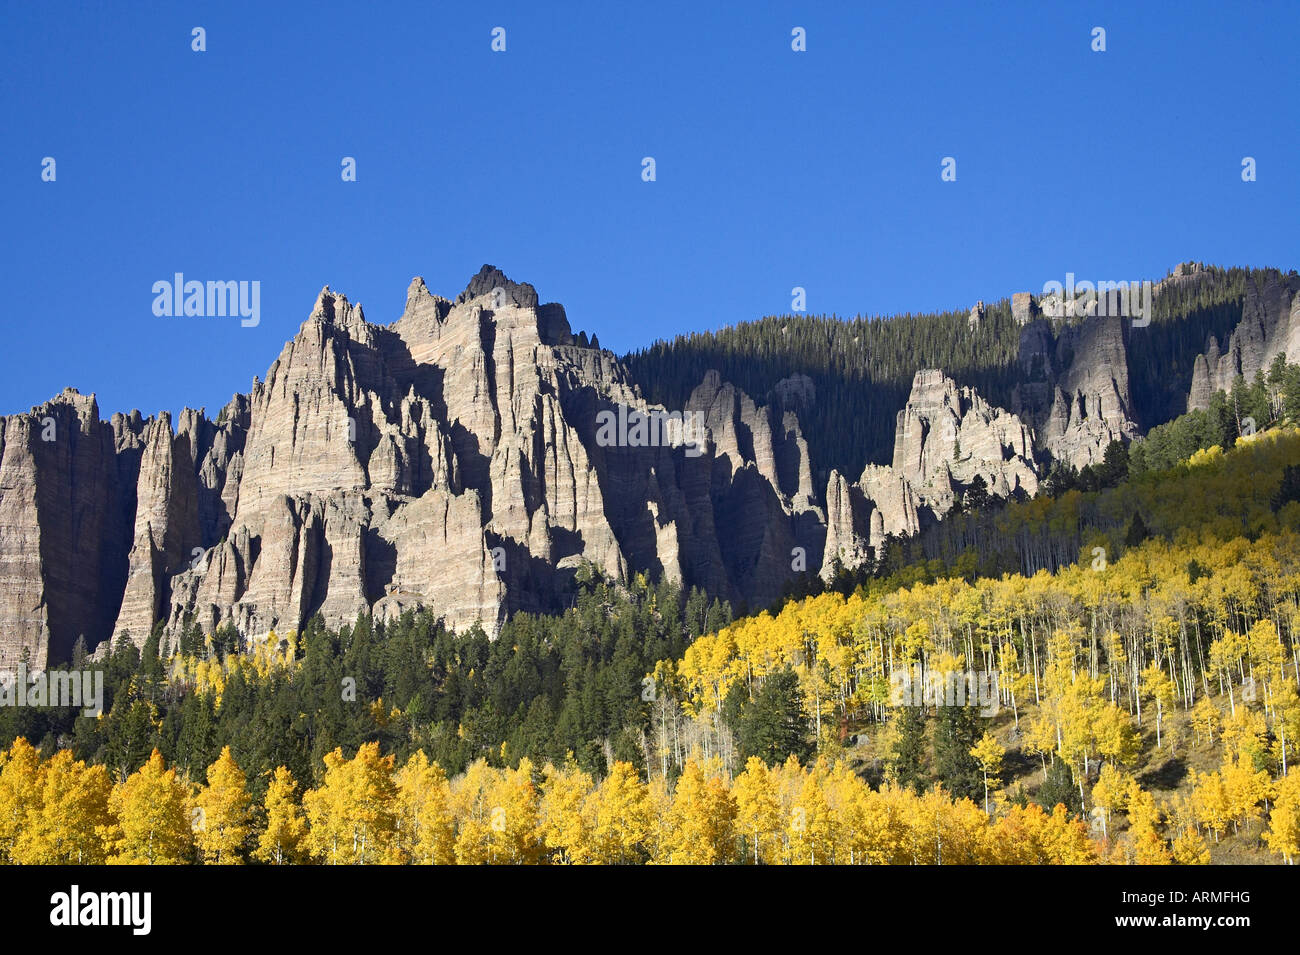 Les trembles en couleurs d'automne avec les montagnes et les conifères, près de Silver Jack, Uncompahgre National Forest, Colorado, USA, Amérique du Nord Banque D'Images